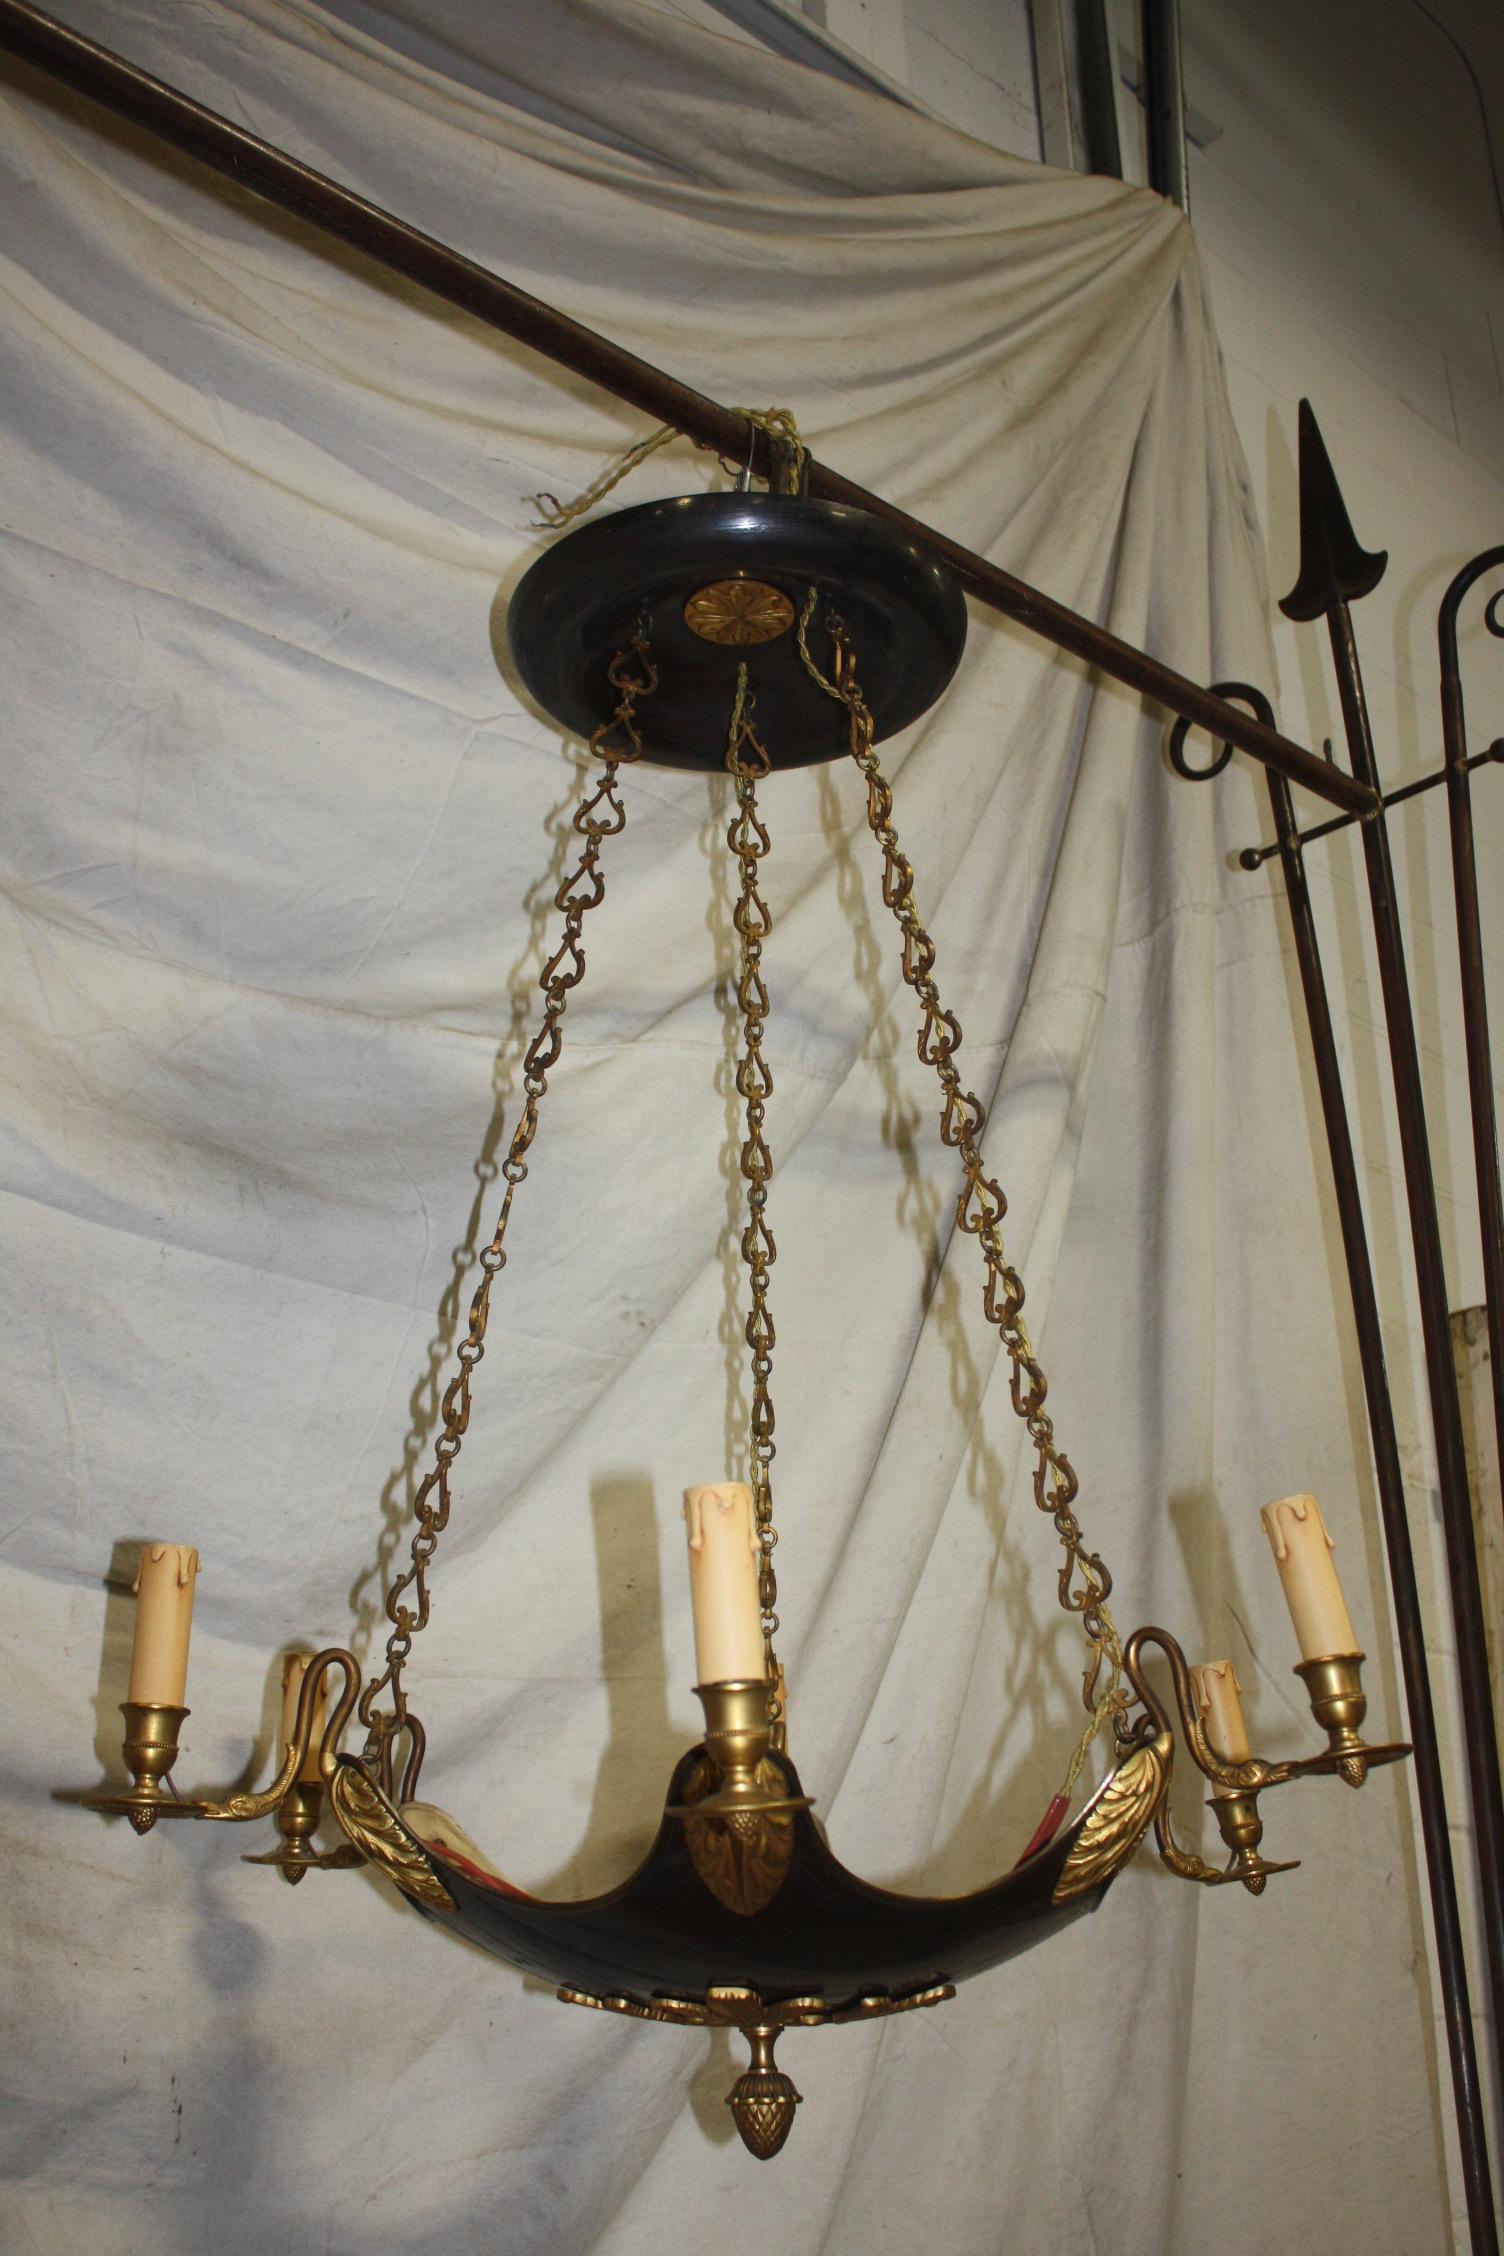 French restauration period chandelier.